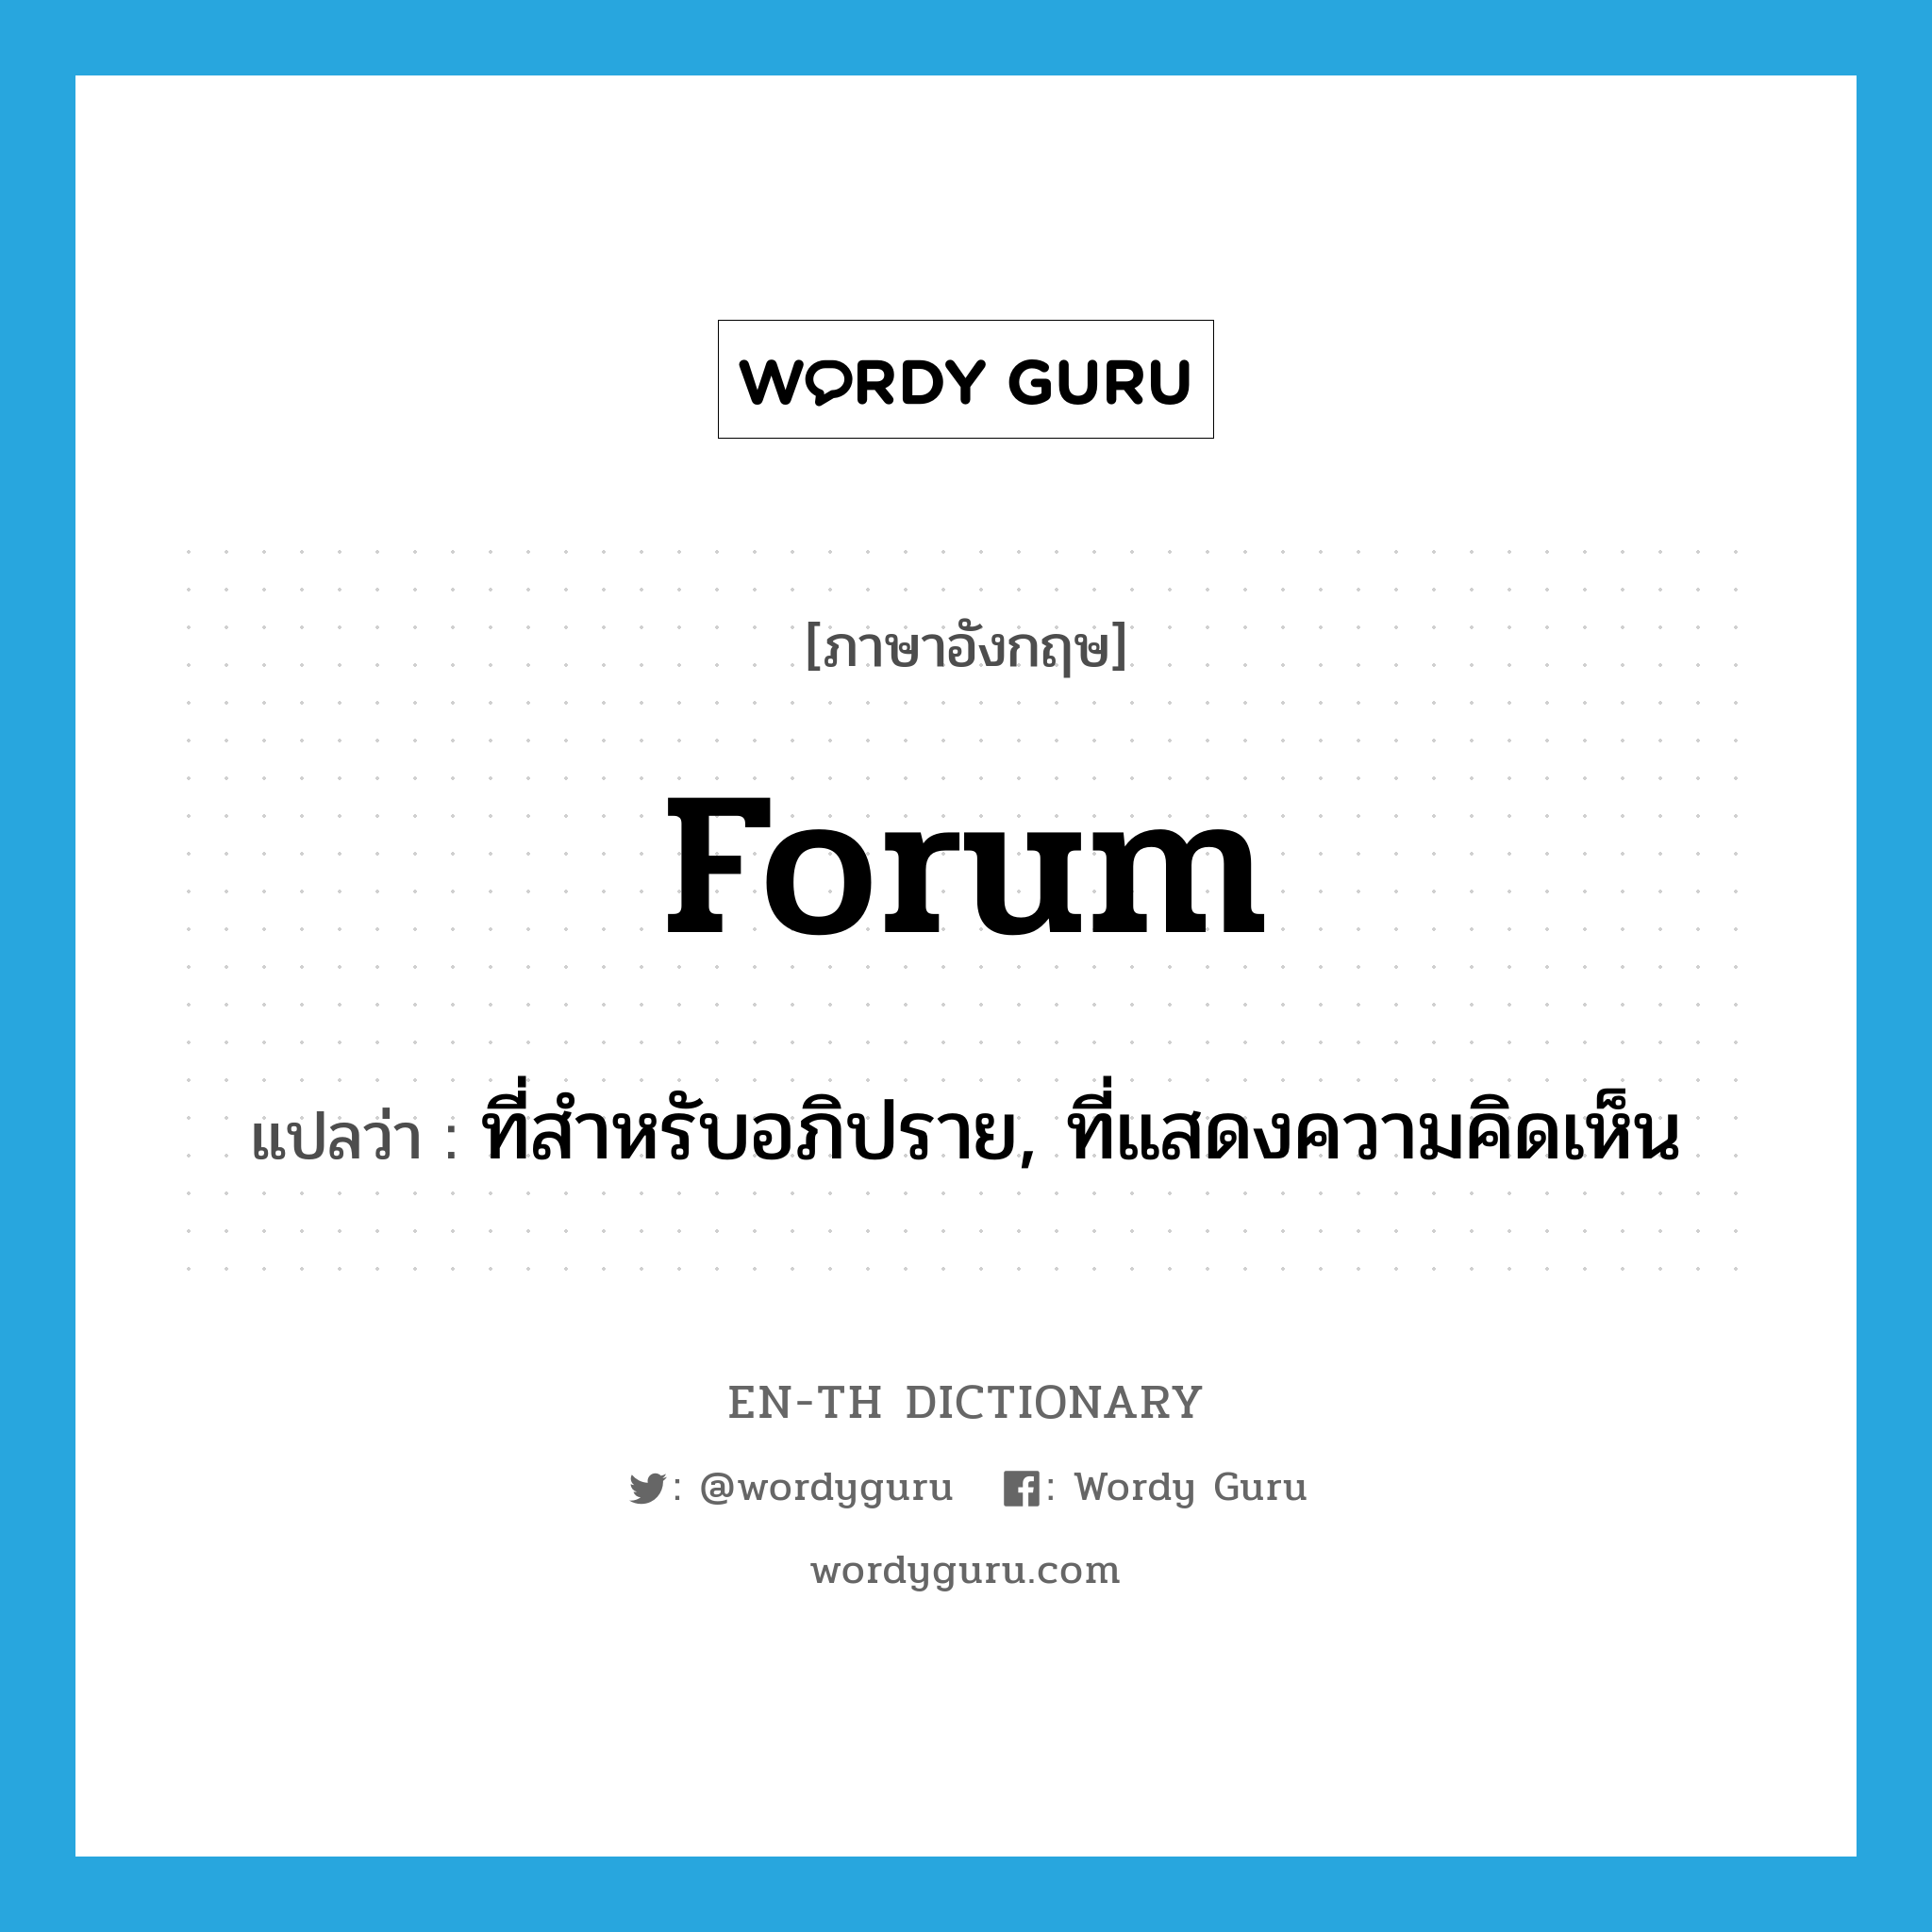 forum แปลว่า?, คำศัพท์ภาษาอังกฤษ forum แปลว่า ที่สำหรับอภิปราย, ที่แสดงความคิดเห็น ประเภท N หมวด N